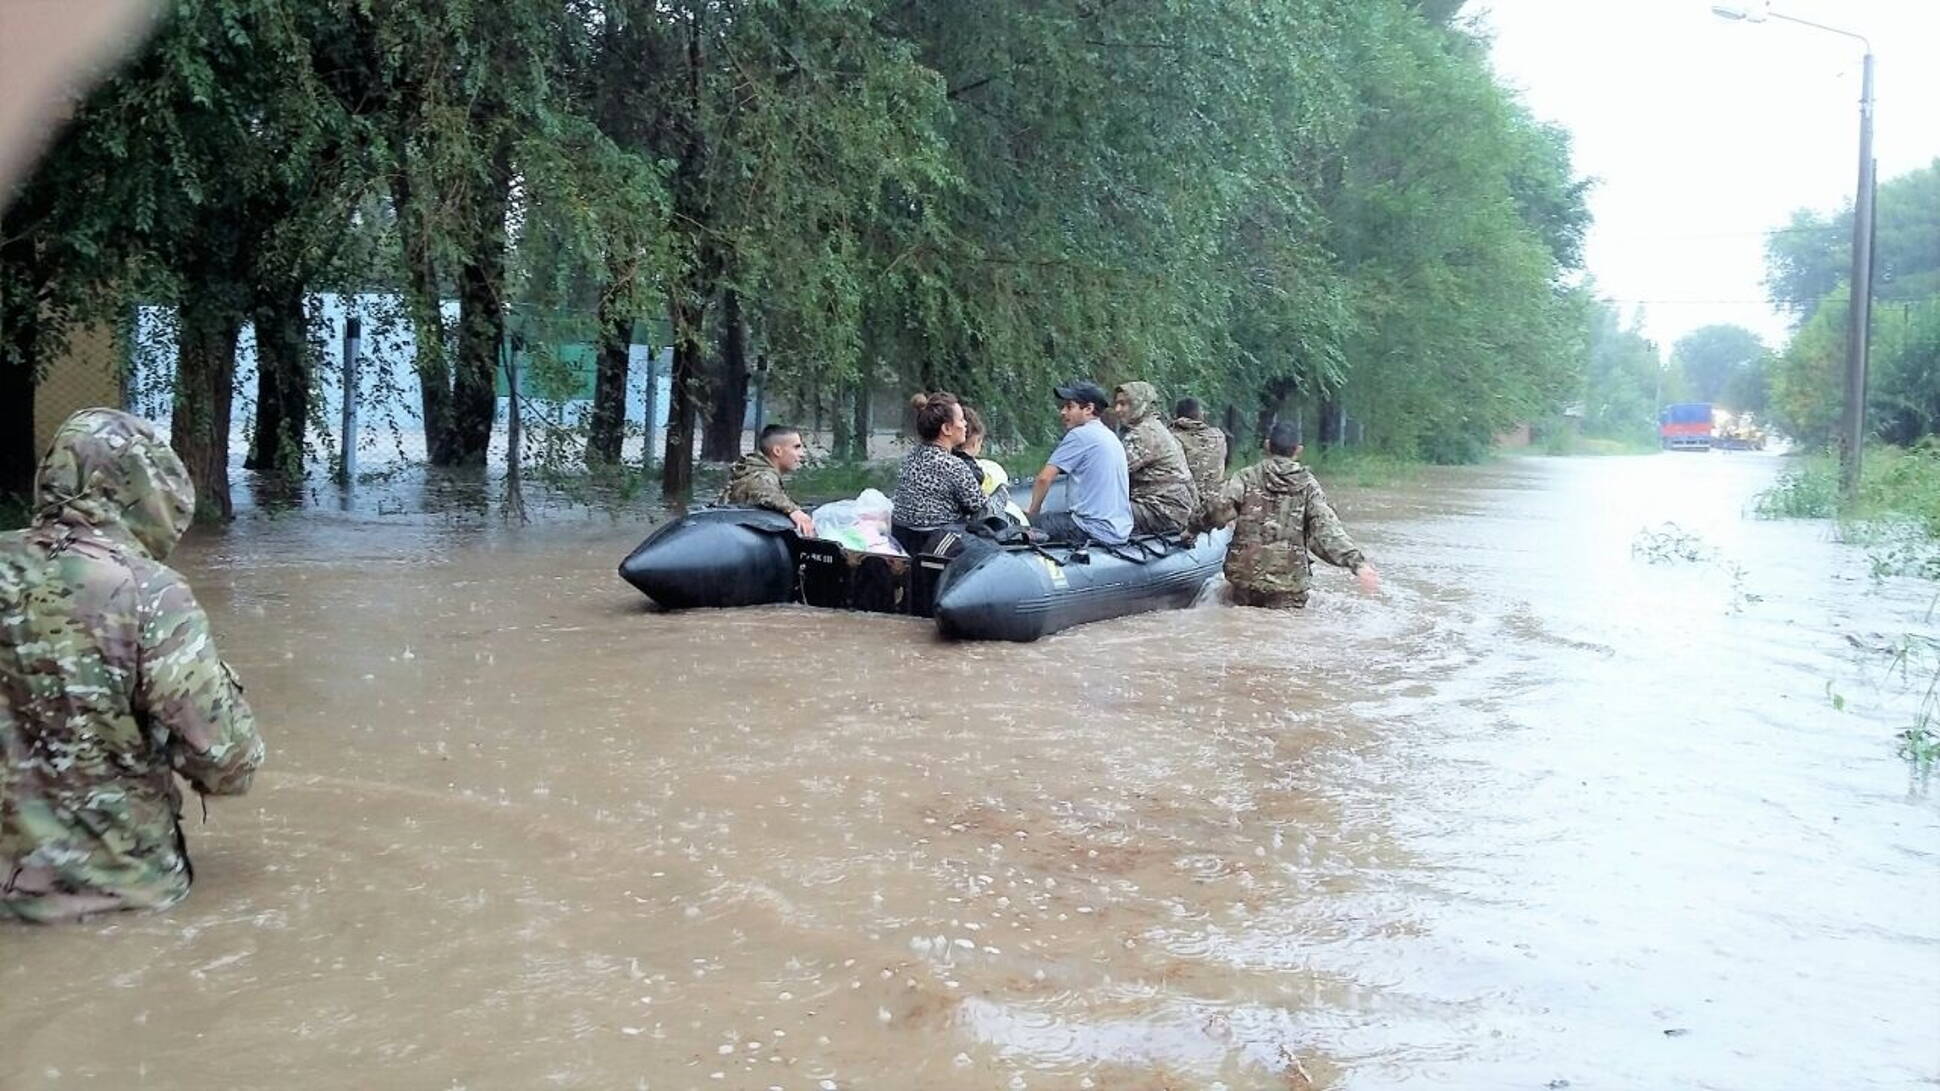 Continúa el operativo de asistencia a los pobladores afectados por los fuertes temporales e inundaciones